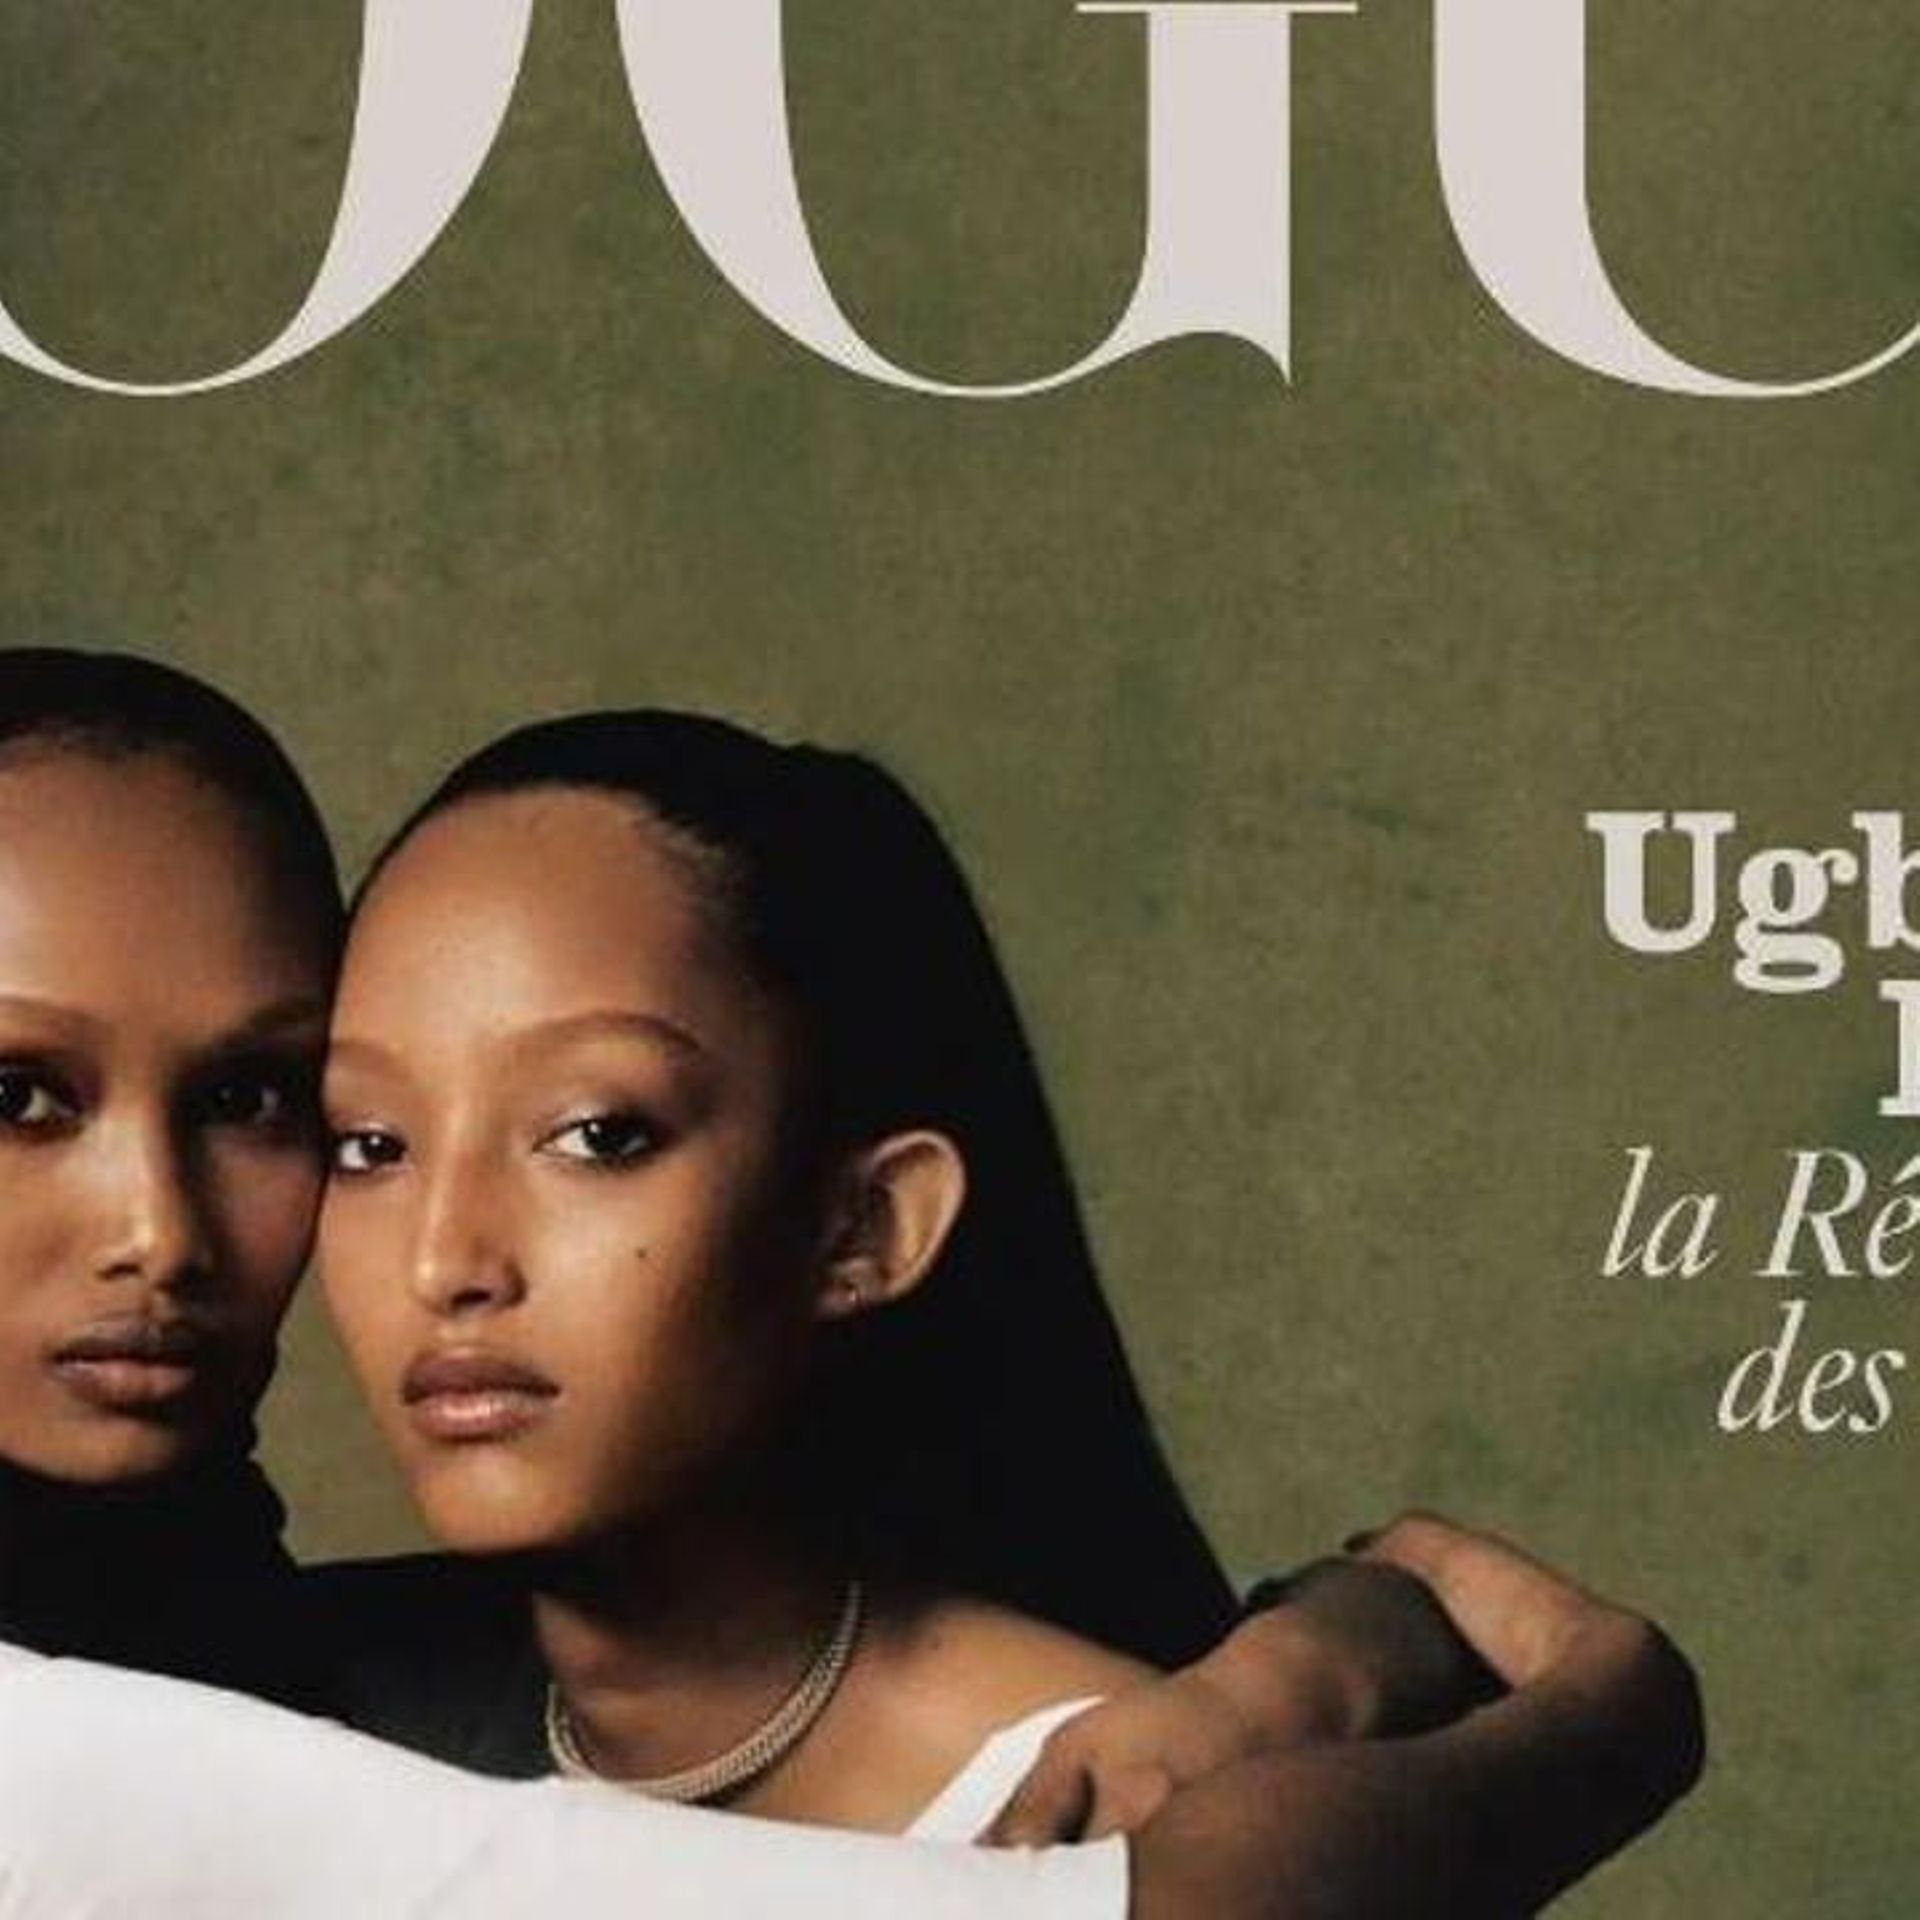 diversité: À 106 ans, elle fait la couverture de «Vogue» - 20 minutes